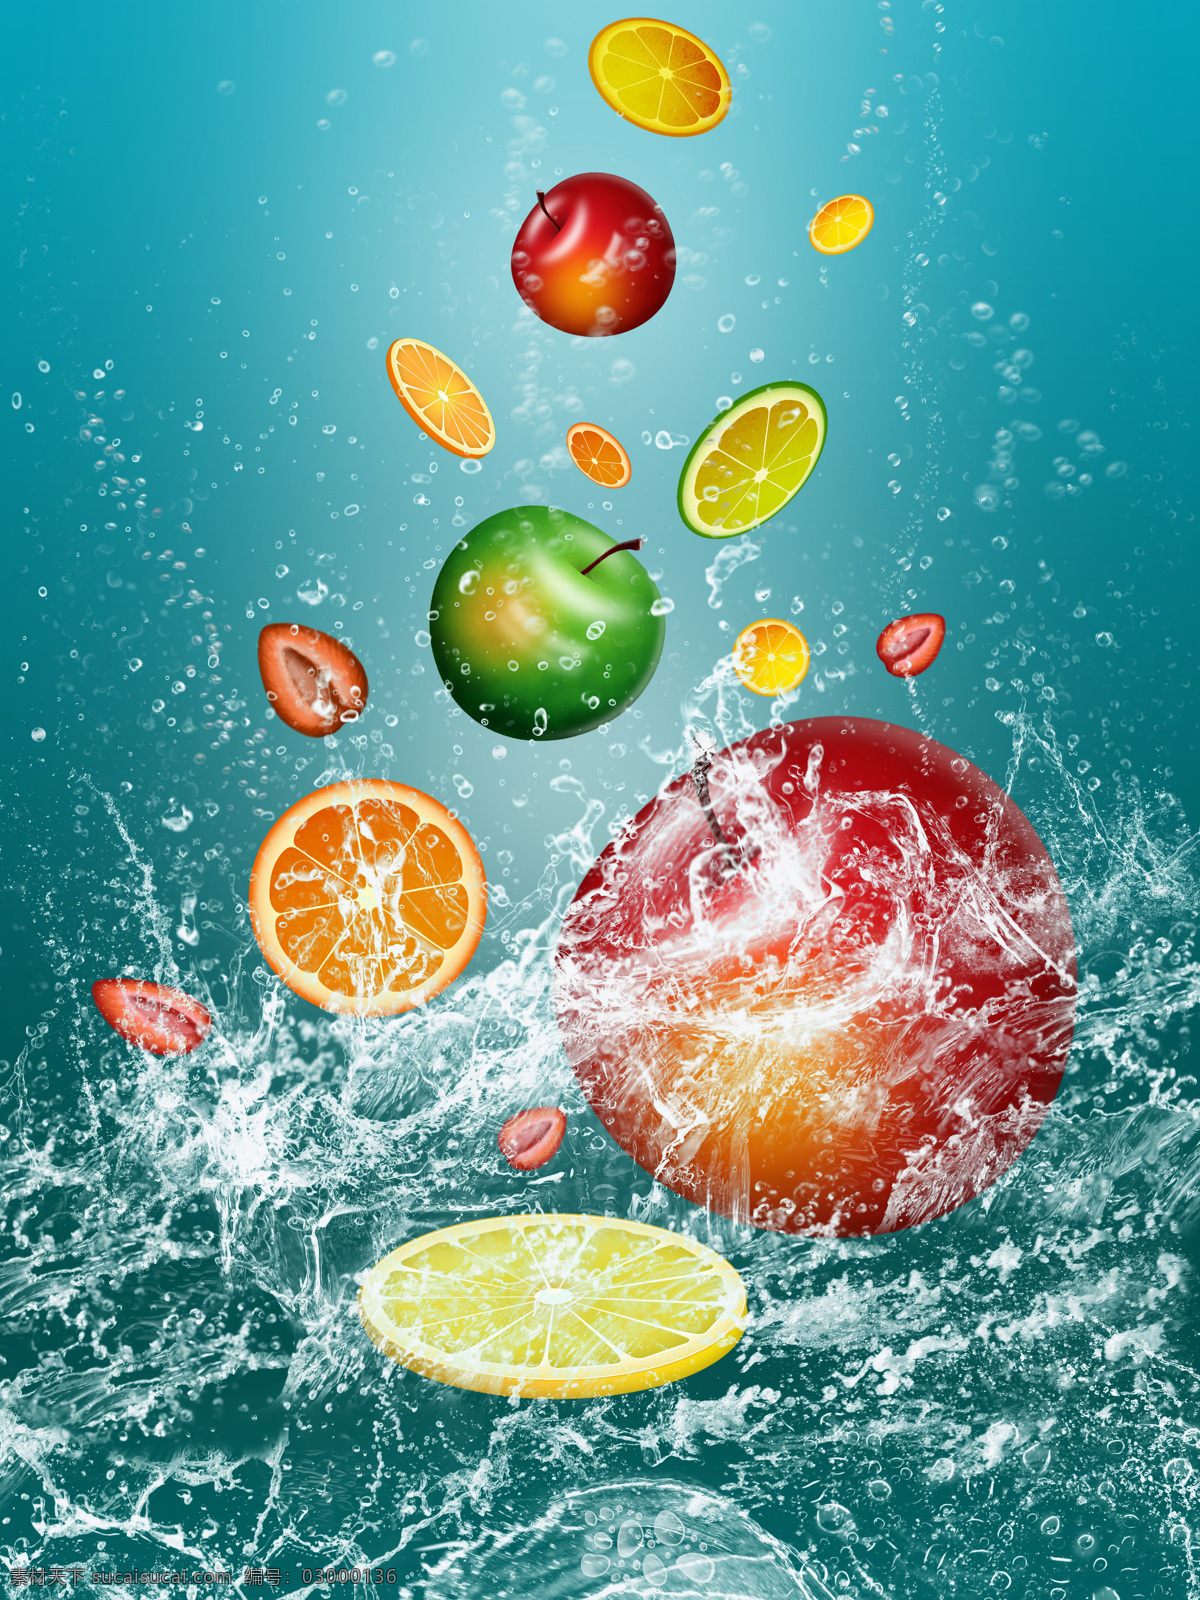 落入 水中 水果 水中水果 水中草莓 草鲜橙 桔子 桔片 苹果 水果图片 餐饮美食